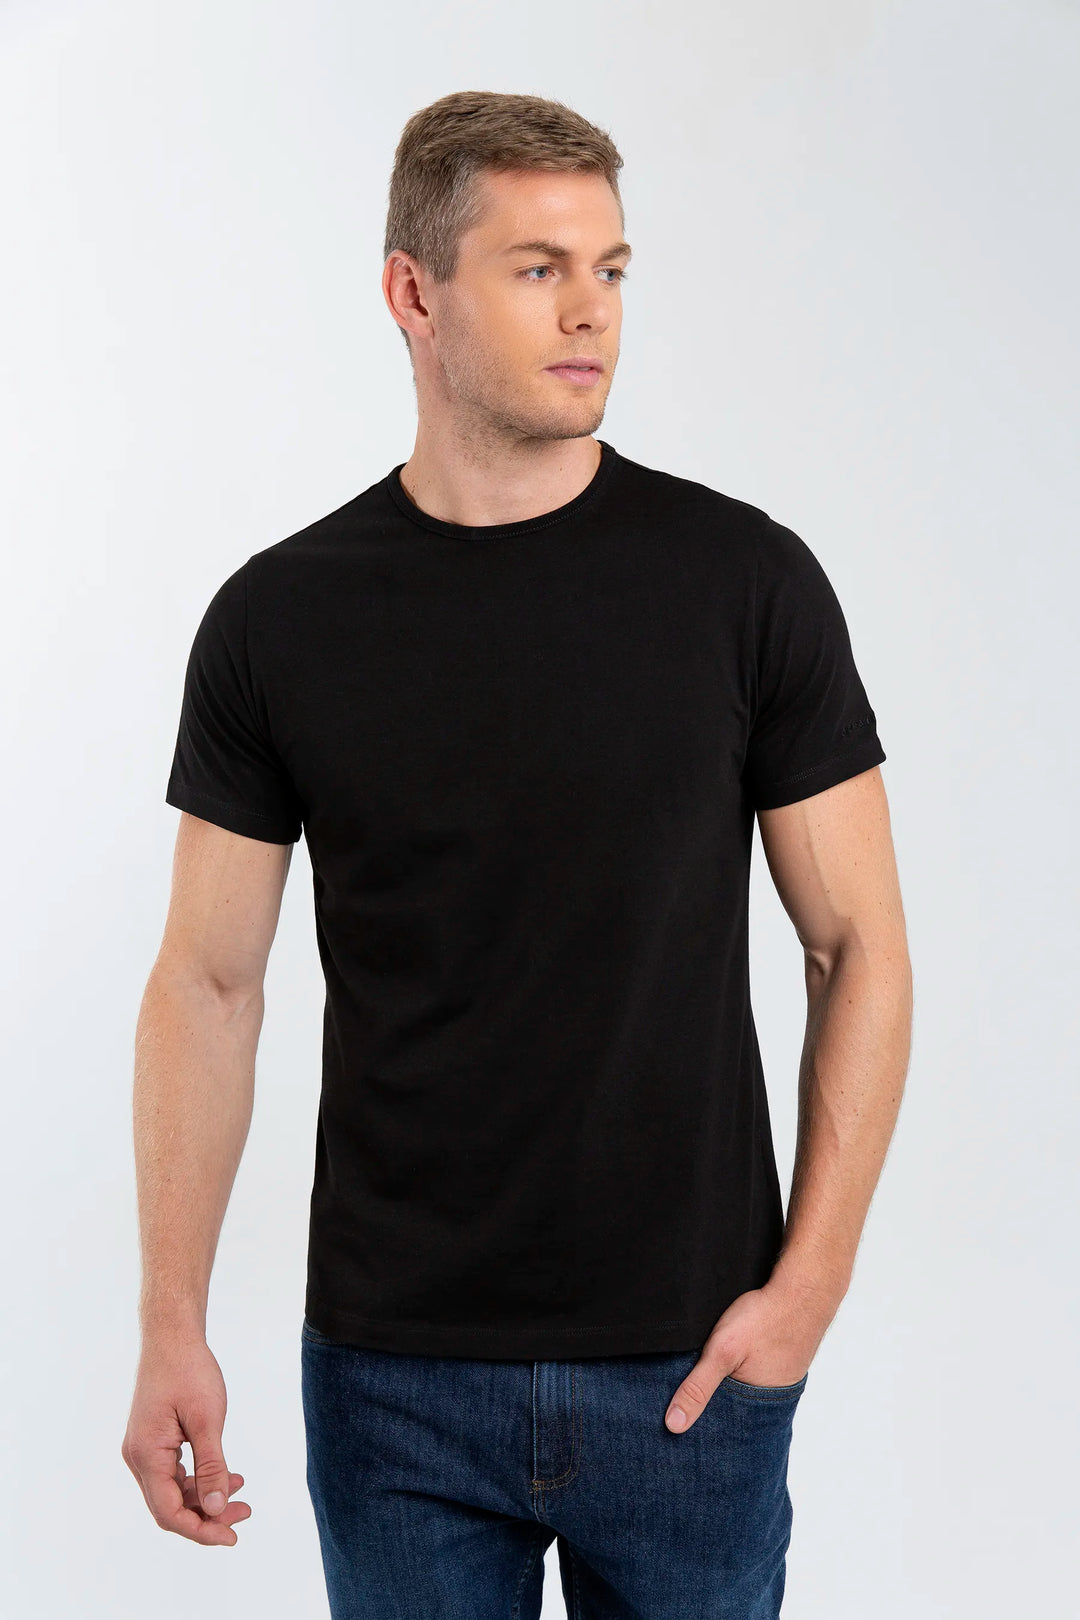 Camiseta negra para hombre, una camiseta que garantiza máxima comodidad en cualquier ocasión 